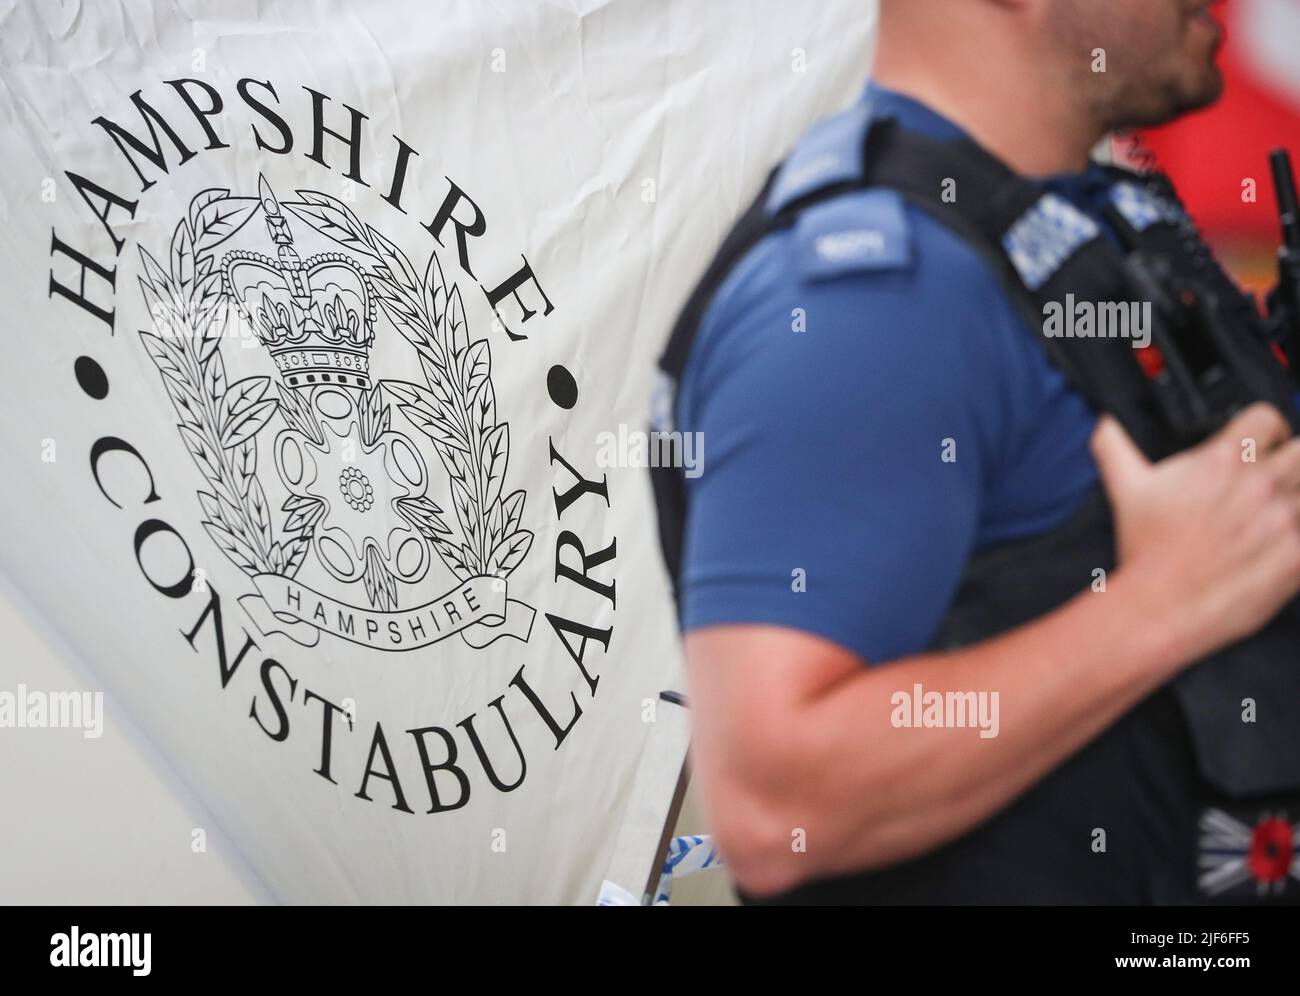 Un ufficiale di polizia dell'Hampshire Constabulary custodisce una scena criminale. Foto Stock